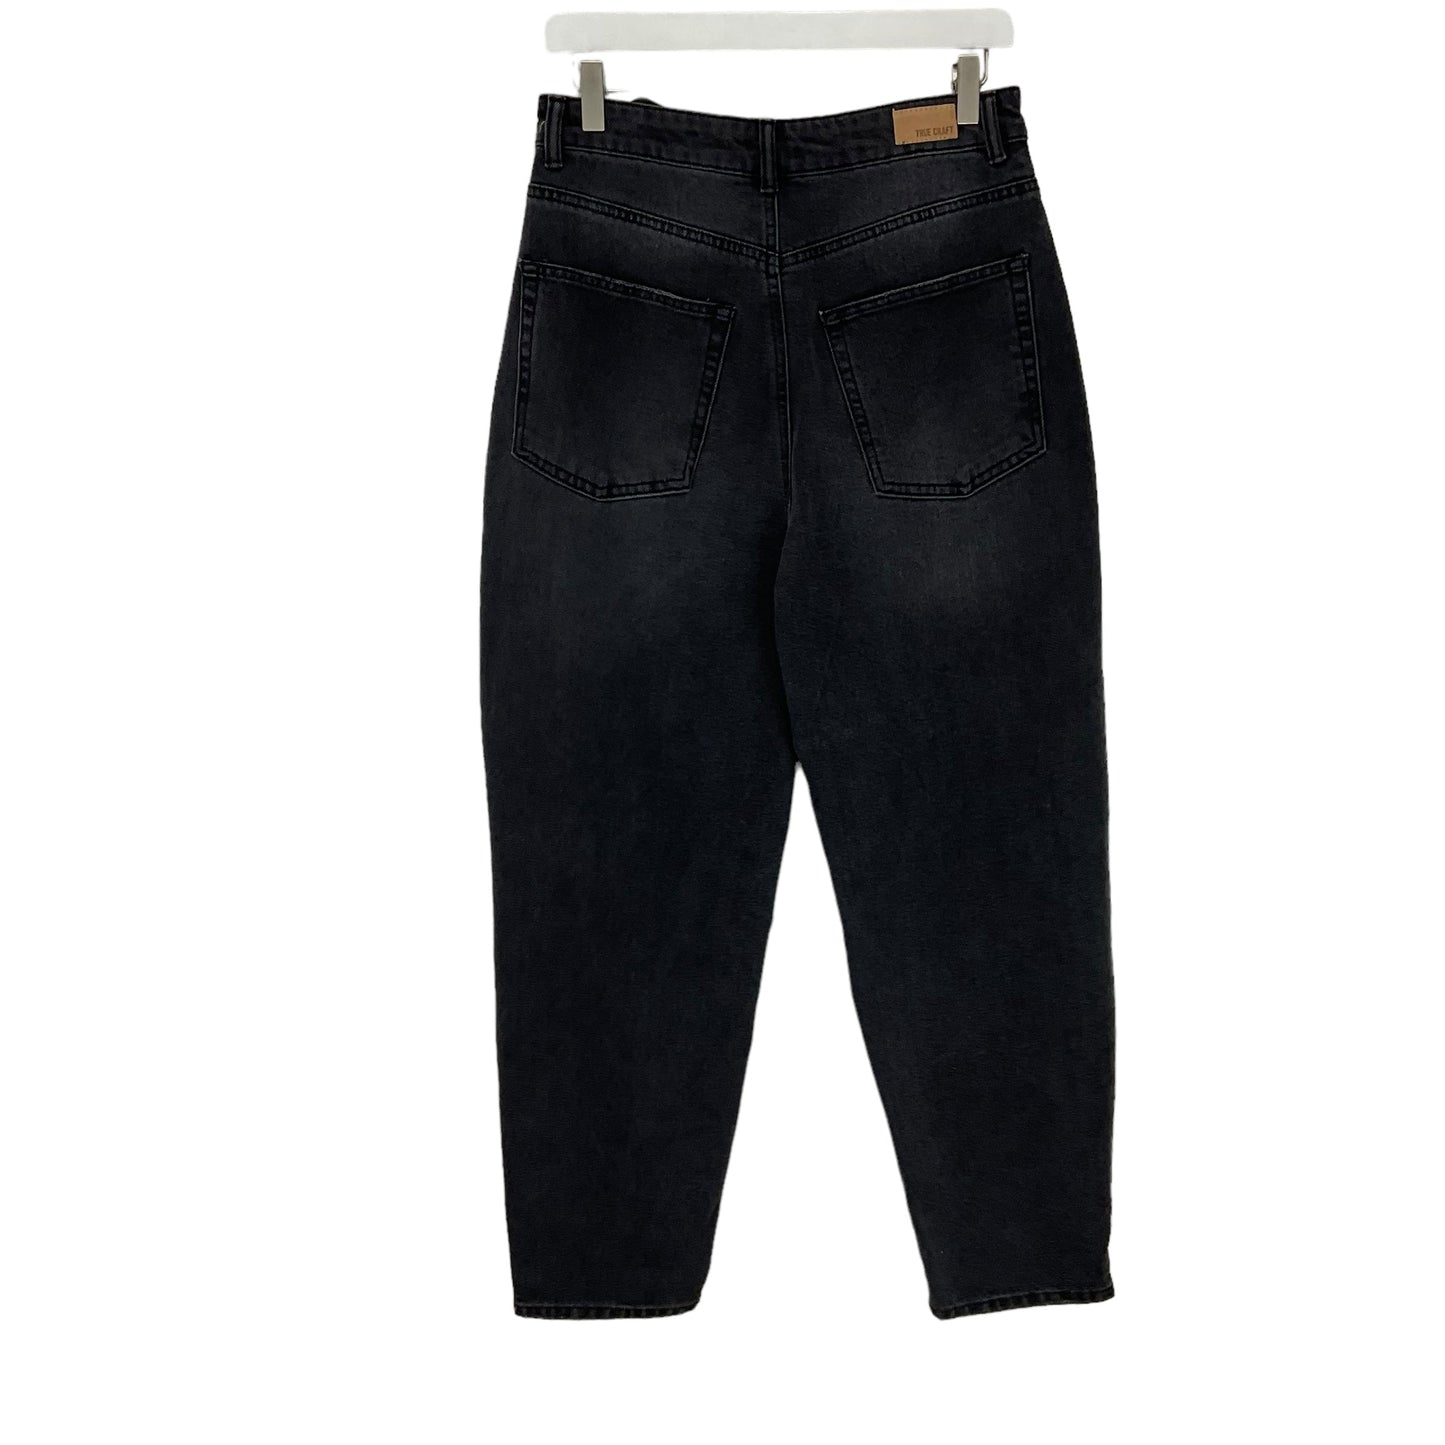 Black Denim Jeans Boot Cut True Craft, Size 11